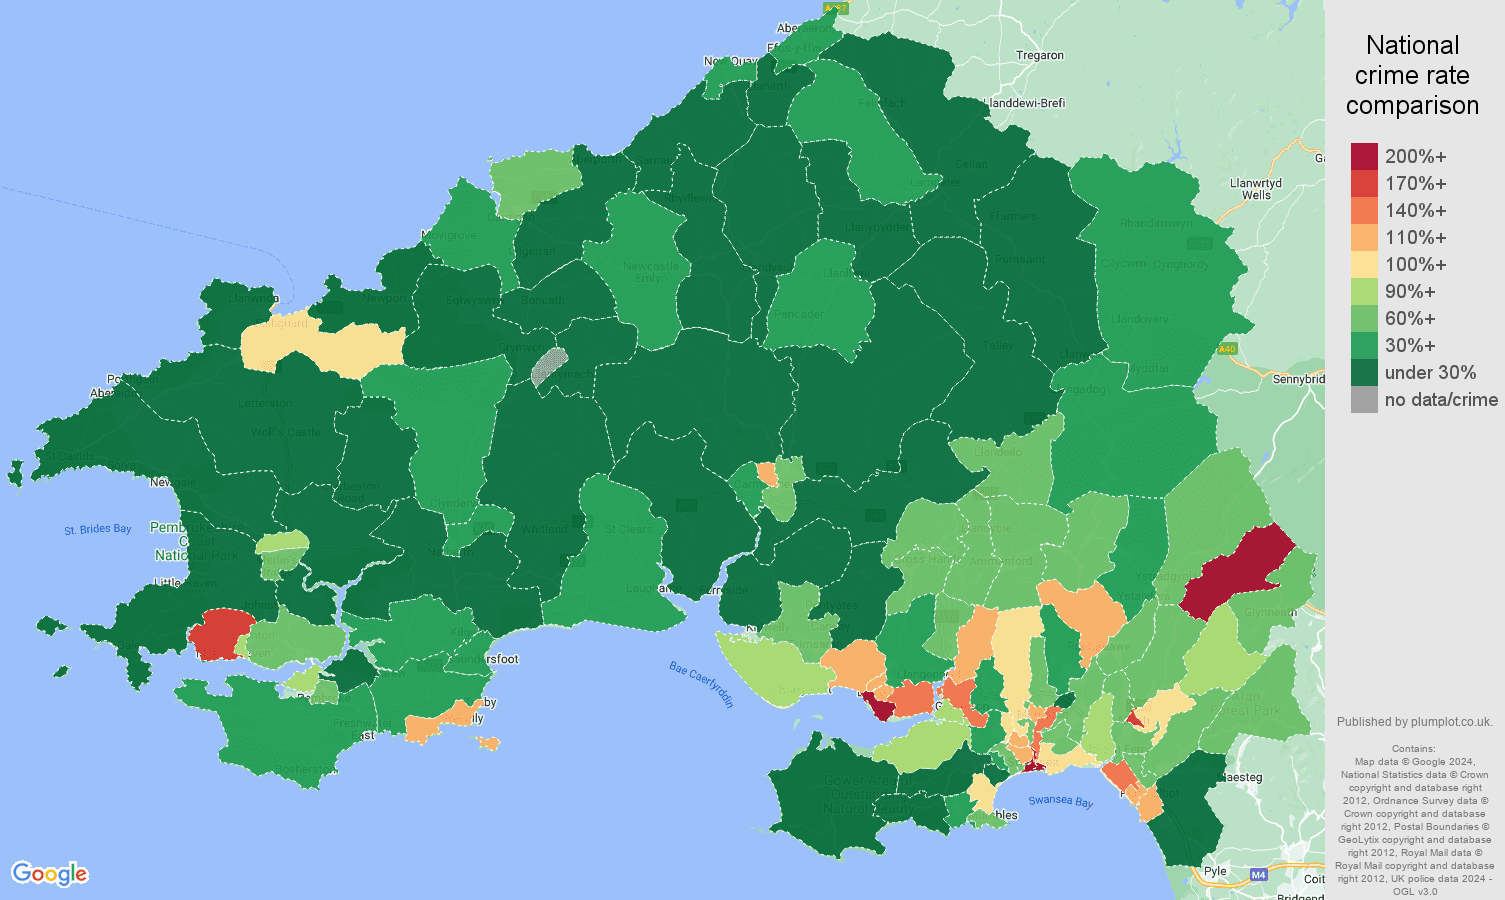 Swansea antisocial behaviour crime rate comparison map